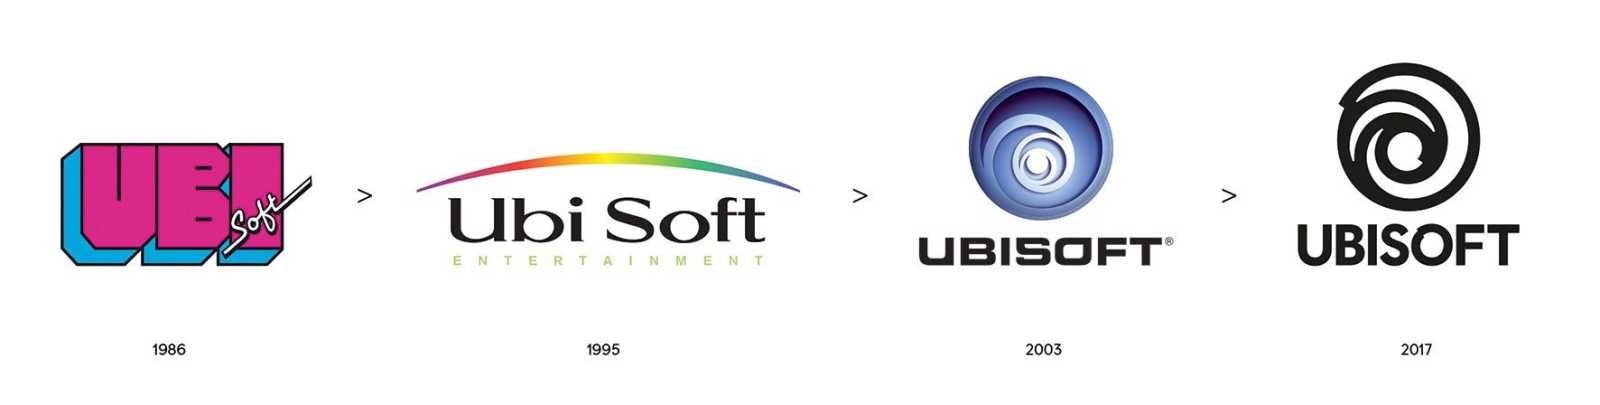 Ubisoft představuje své nové logo